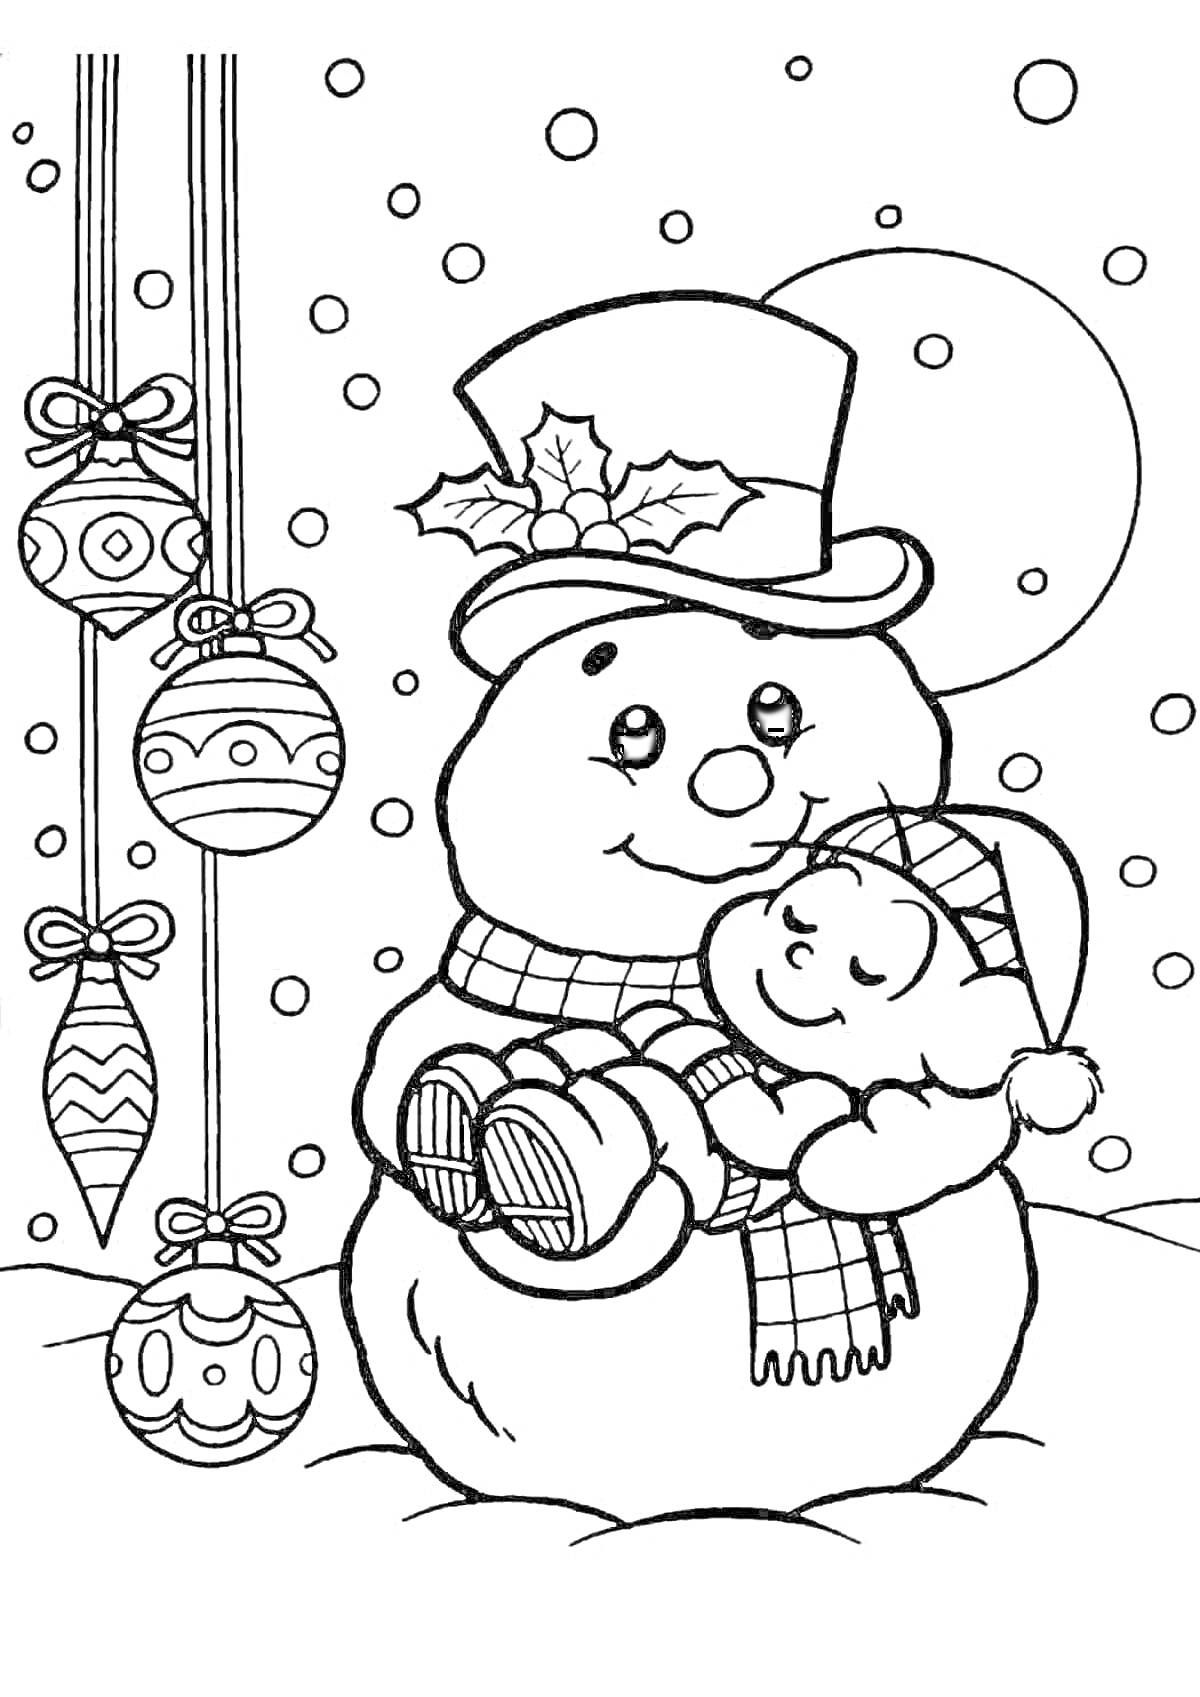 Раскраска Снеговик в шляпе и шарфе, держащий ребенка в шапке, на фоне падающего снега и новогодних шариков